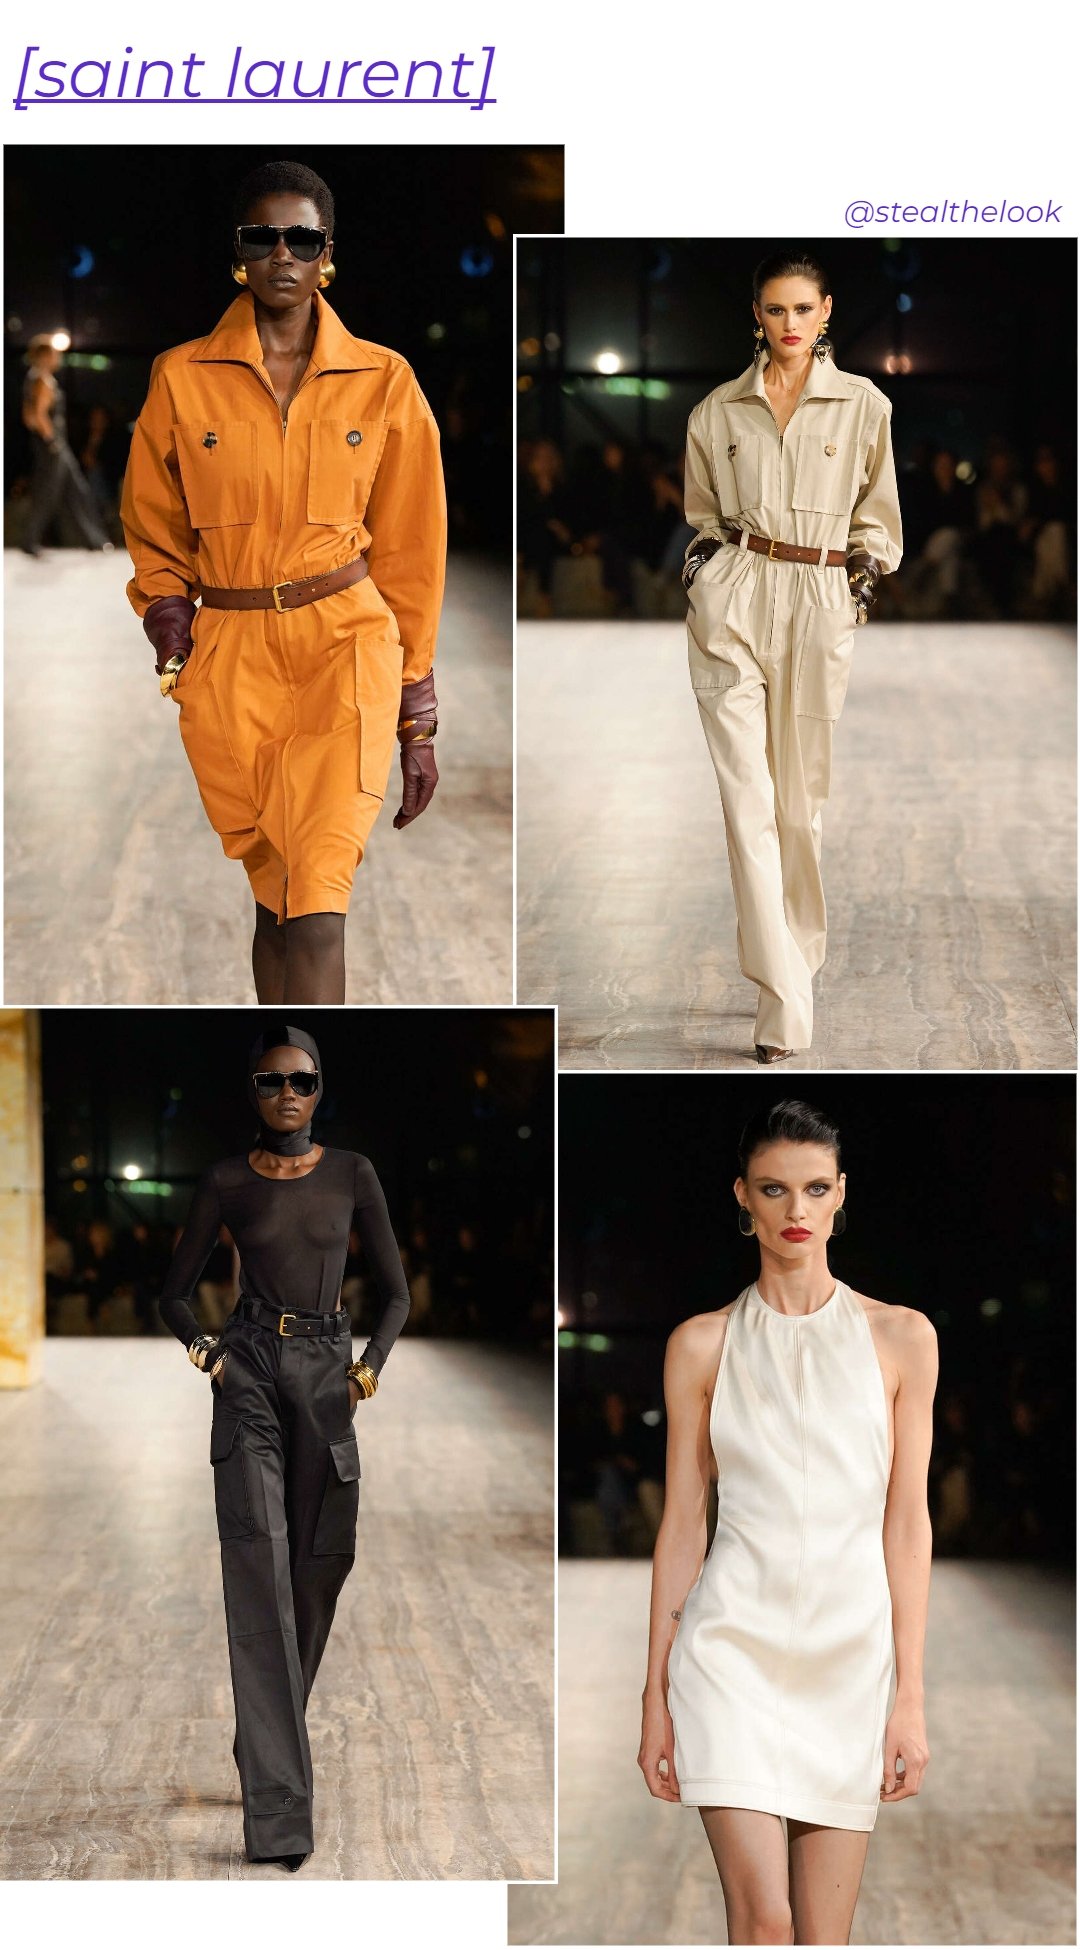 Saint Laurent - roupas diversas - Paris Fashion Week - verão - colagem de imagens - https://stealthelook.com.br